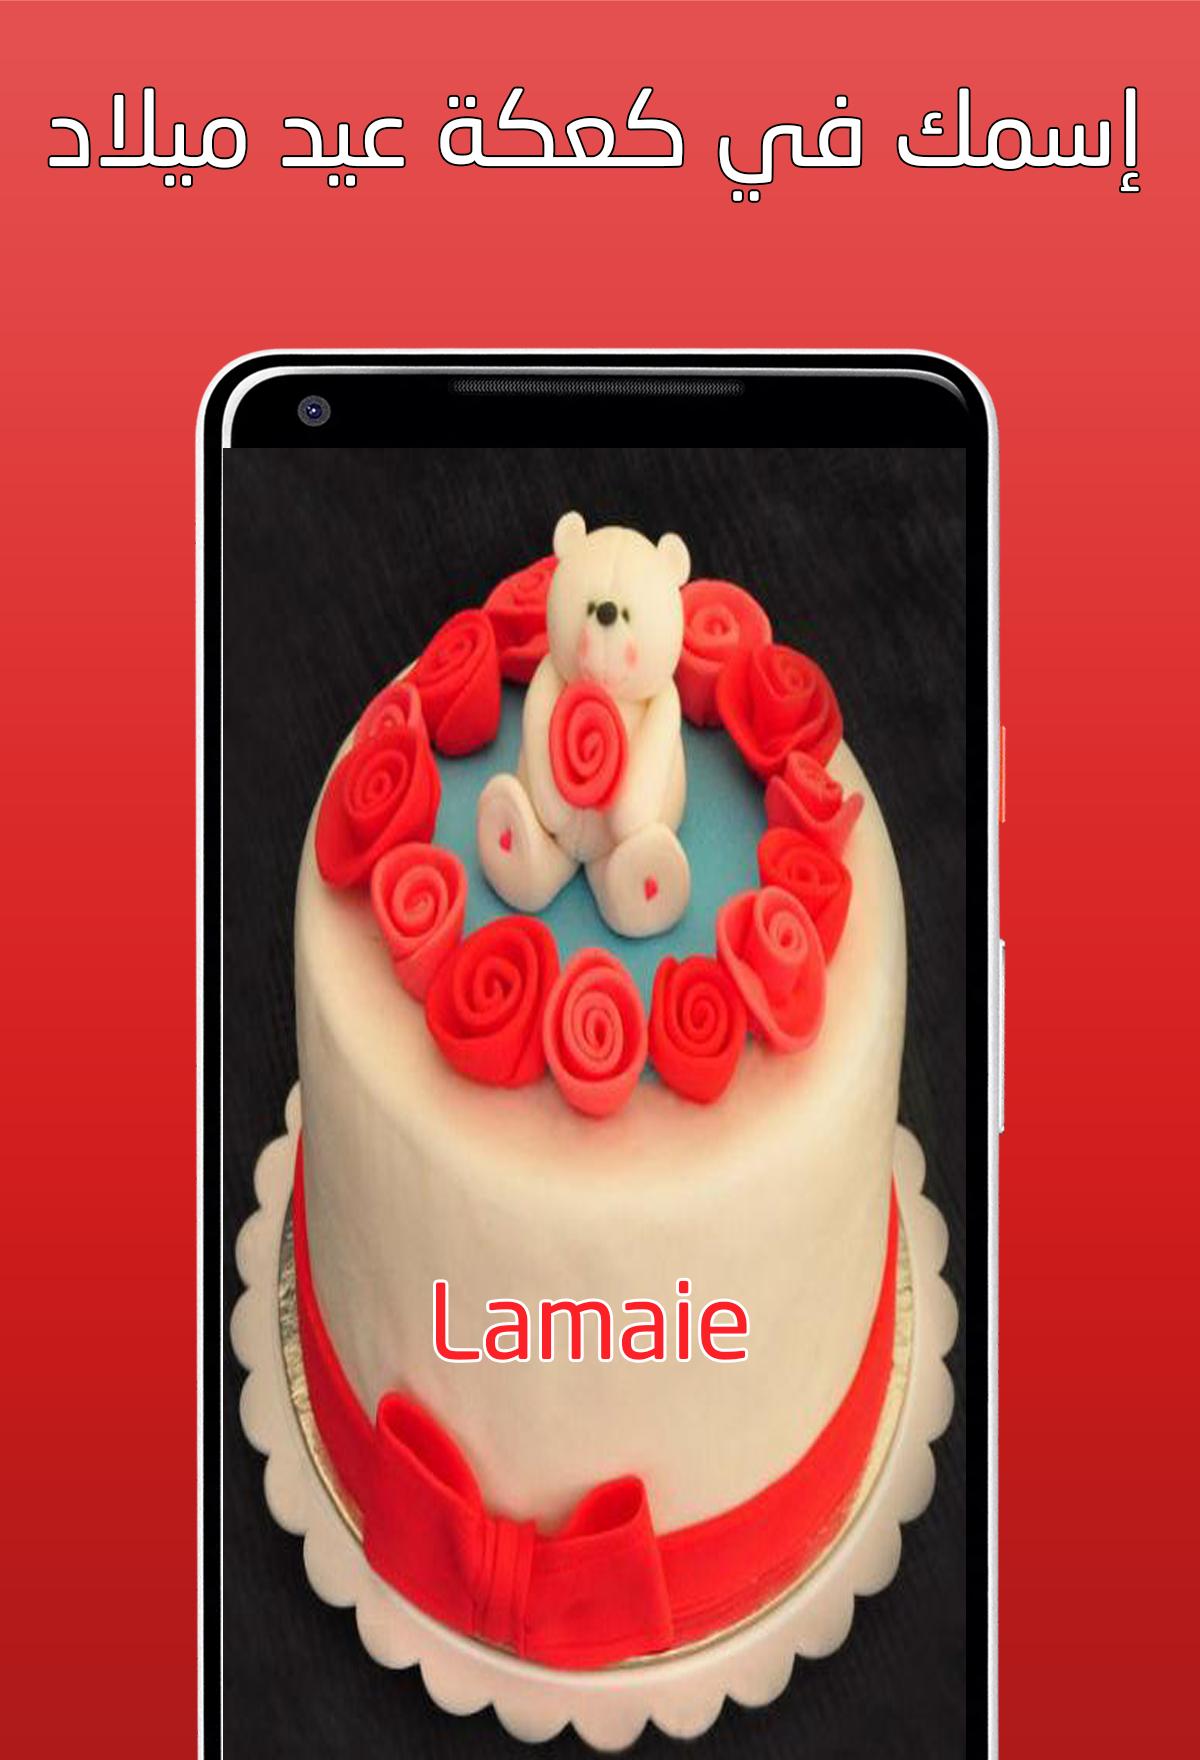 كتابة إسمك في كعكة عيد ميلاد - أعياد الزواج APK for Android Download